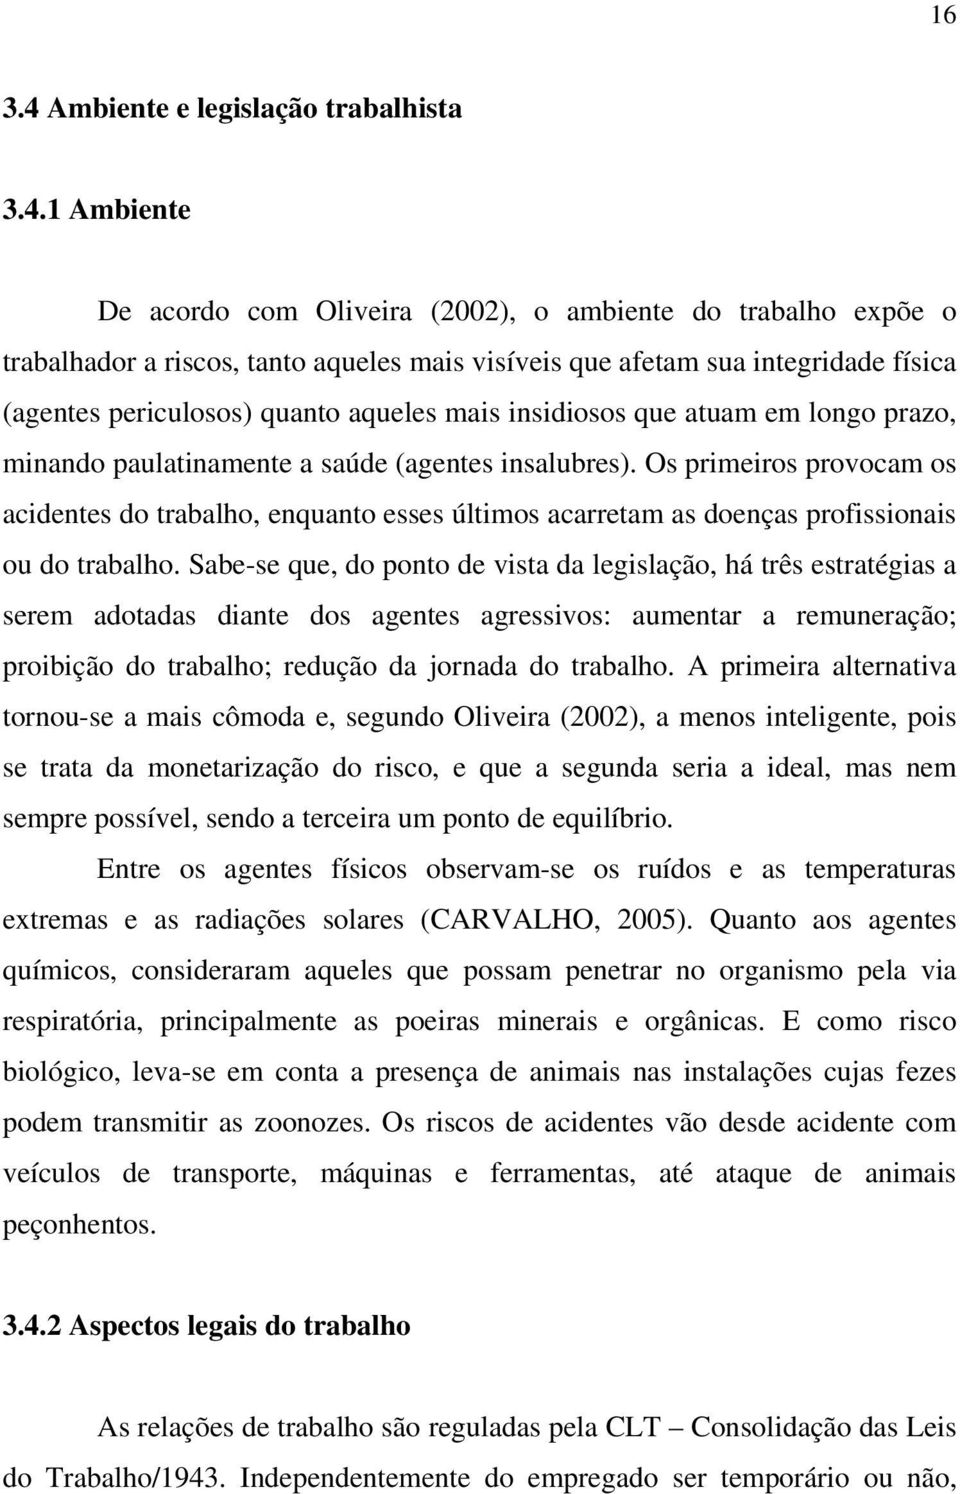 1 Ambiente De acordo com Oliveira (2002), o ambiente do trabalho expõe o trabalhador a riscos, tanto aqueles mais visíveis que afetam sua integridade física (agentes periculosos) quanto aqueles mais